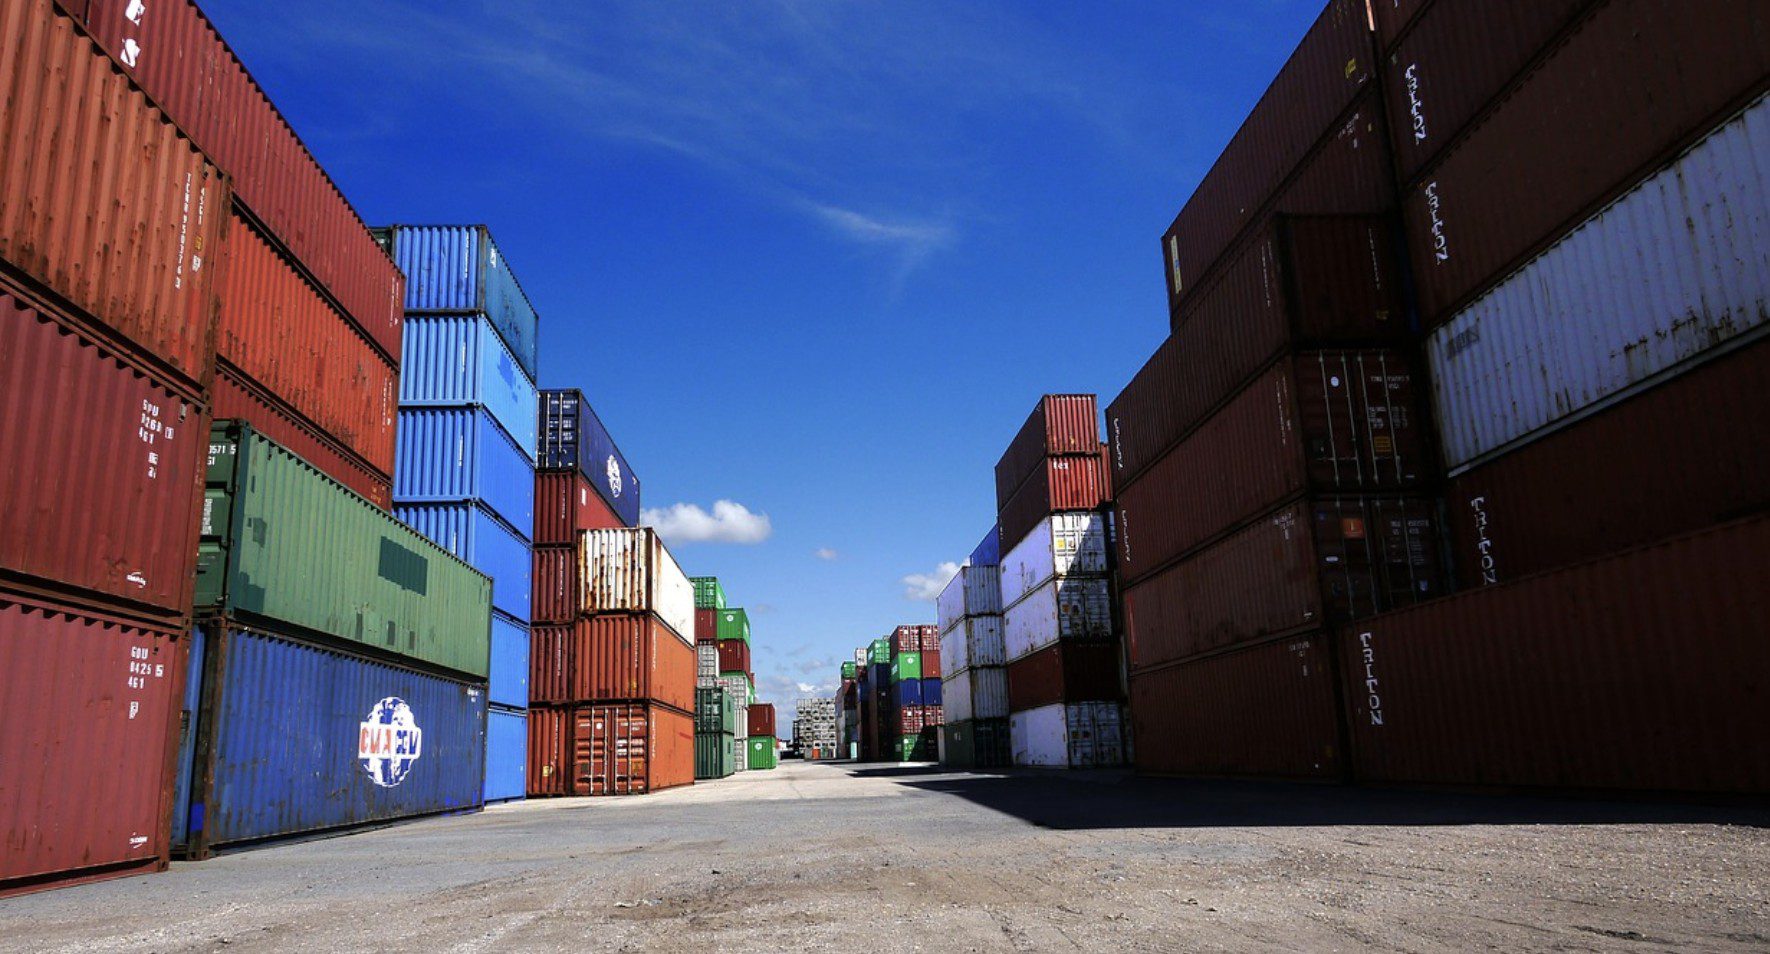 Louez des conteneurs maritimes pour le transport de vos marchandises !